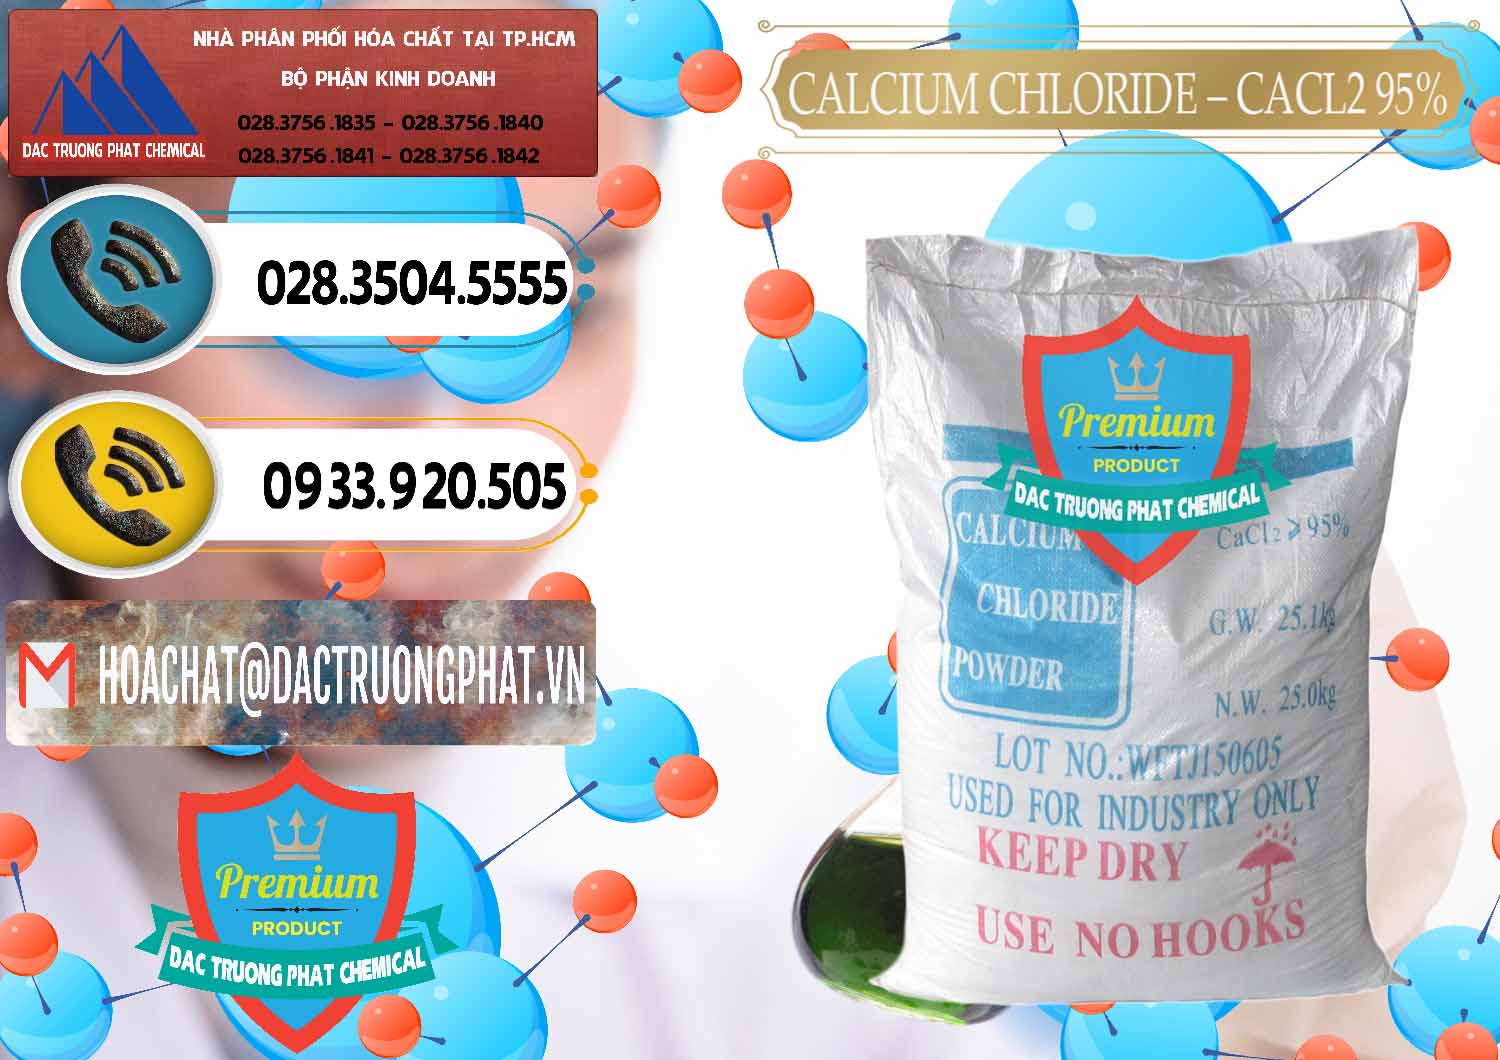 Nơi chuyên bán & cung ứng CaCl2 – Canxi Clorua 95% Trung Quốc China - 0039 - Công ty cung cấp và phân phối hóa chất tại TP.HCM - hoachatdetnhuom.vn